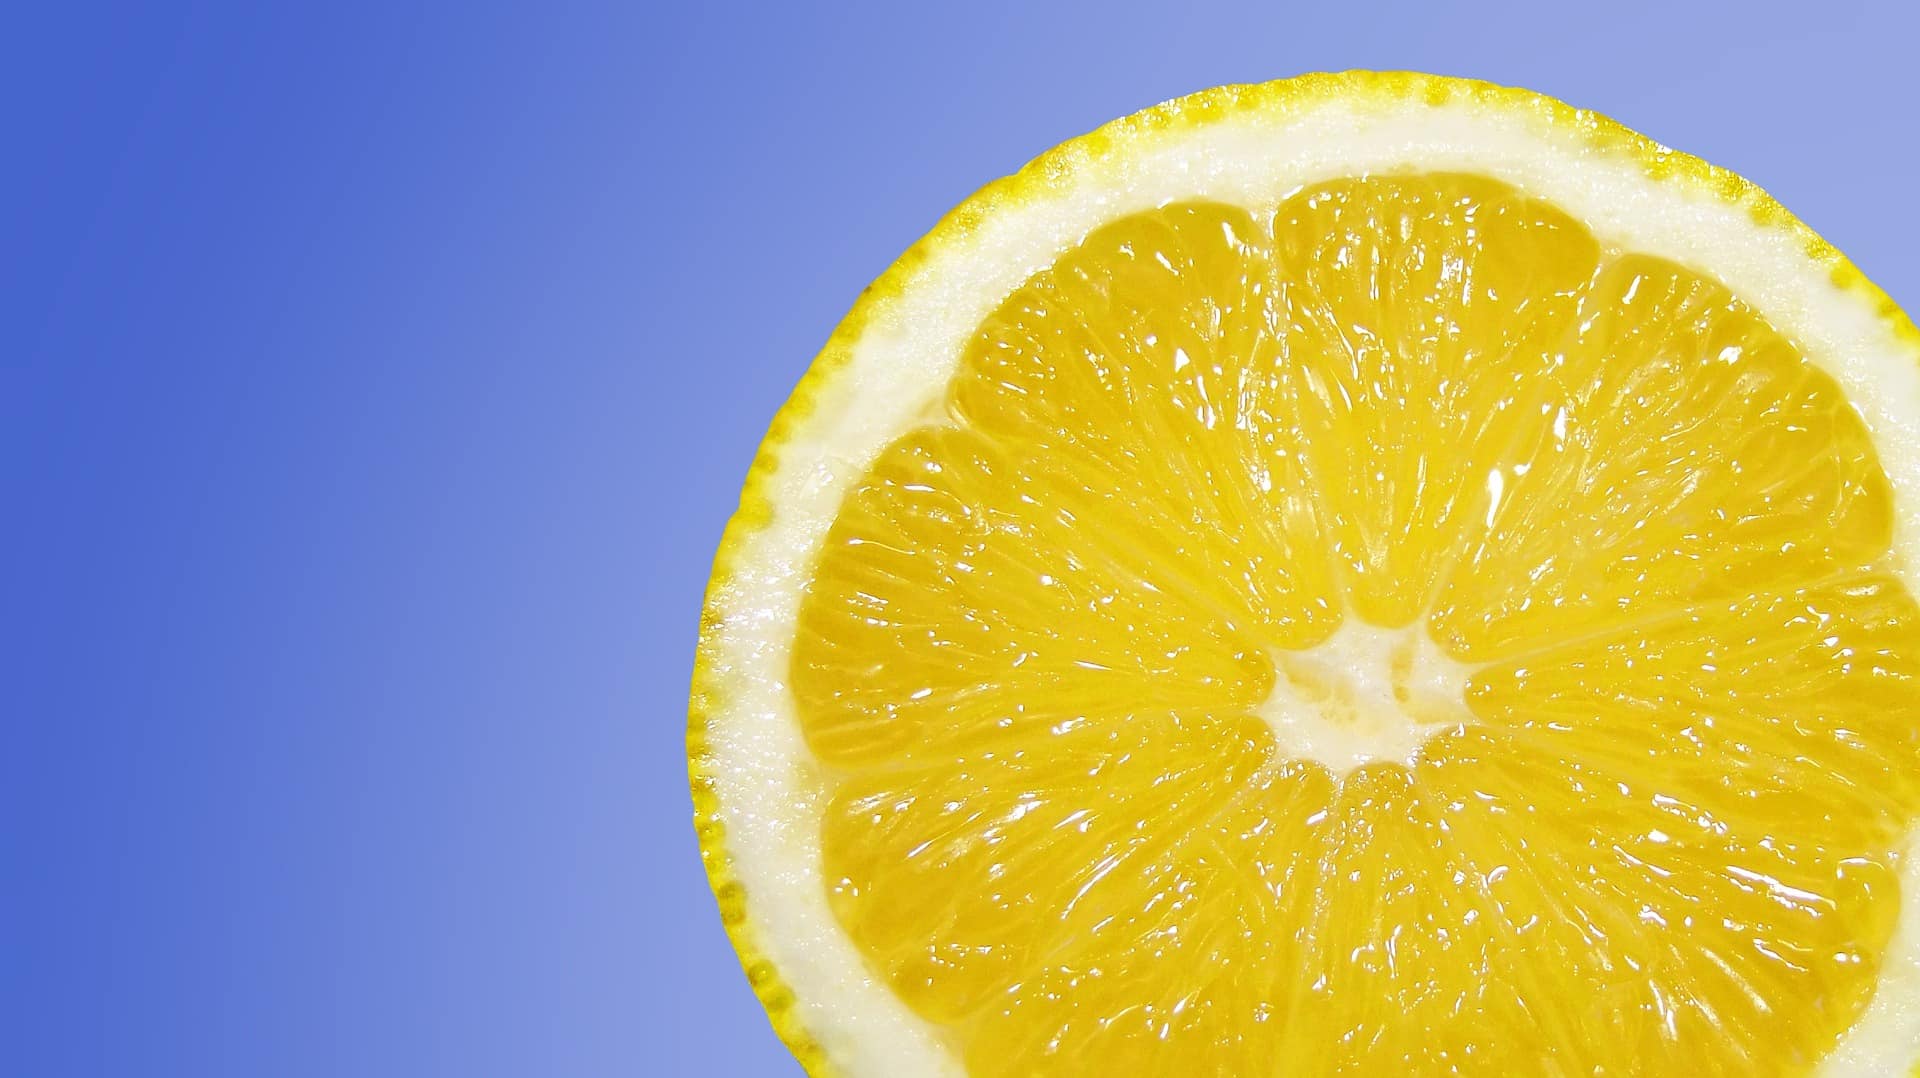 Už jste zkoušeli citrónovou vodu se šafránem? Dokáže vás zbavit deprese i menstruačních křečí